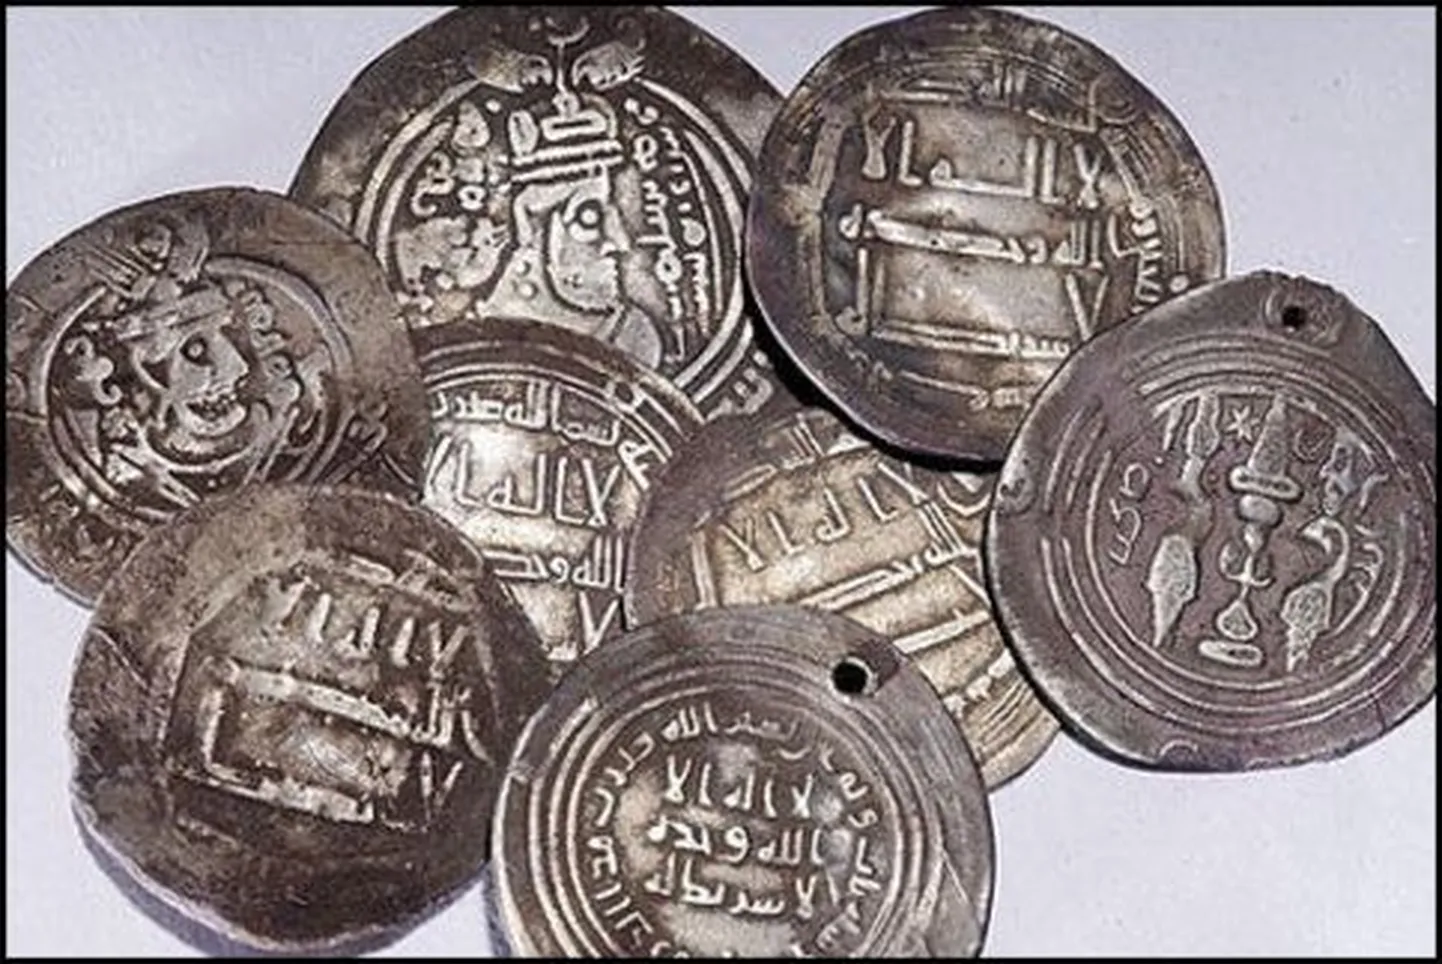 Fotol olevad vanad mündid ei ole leiuga seotud..